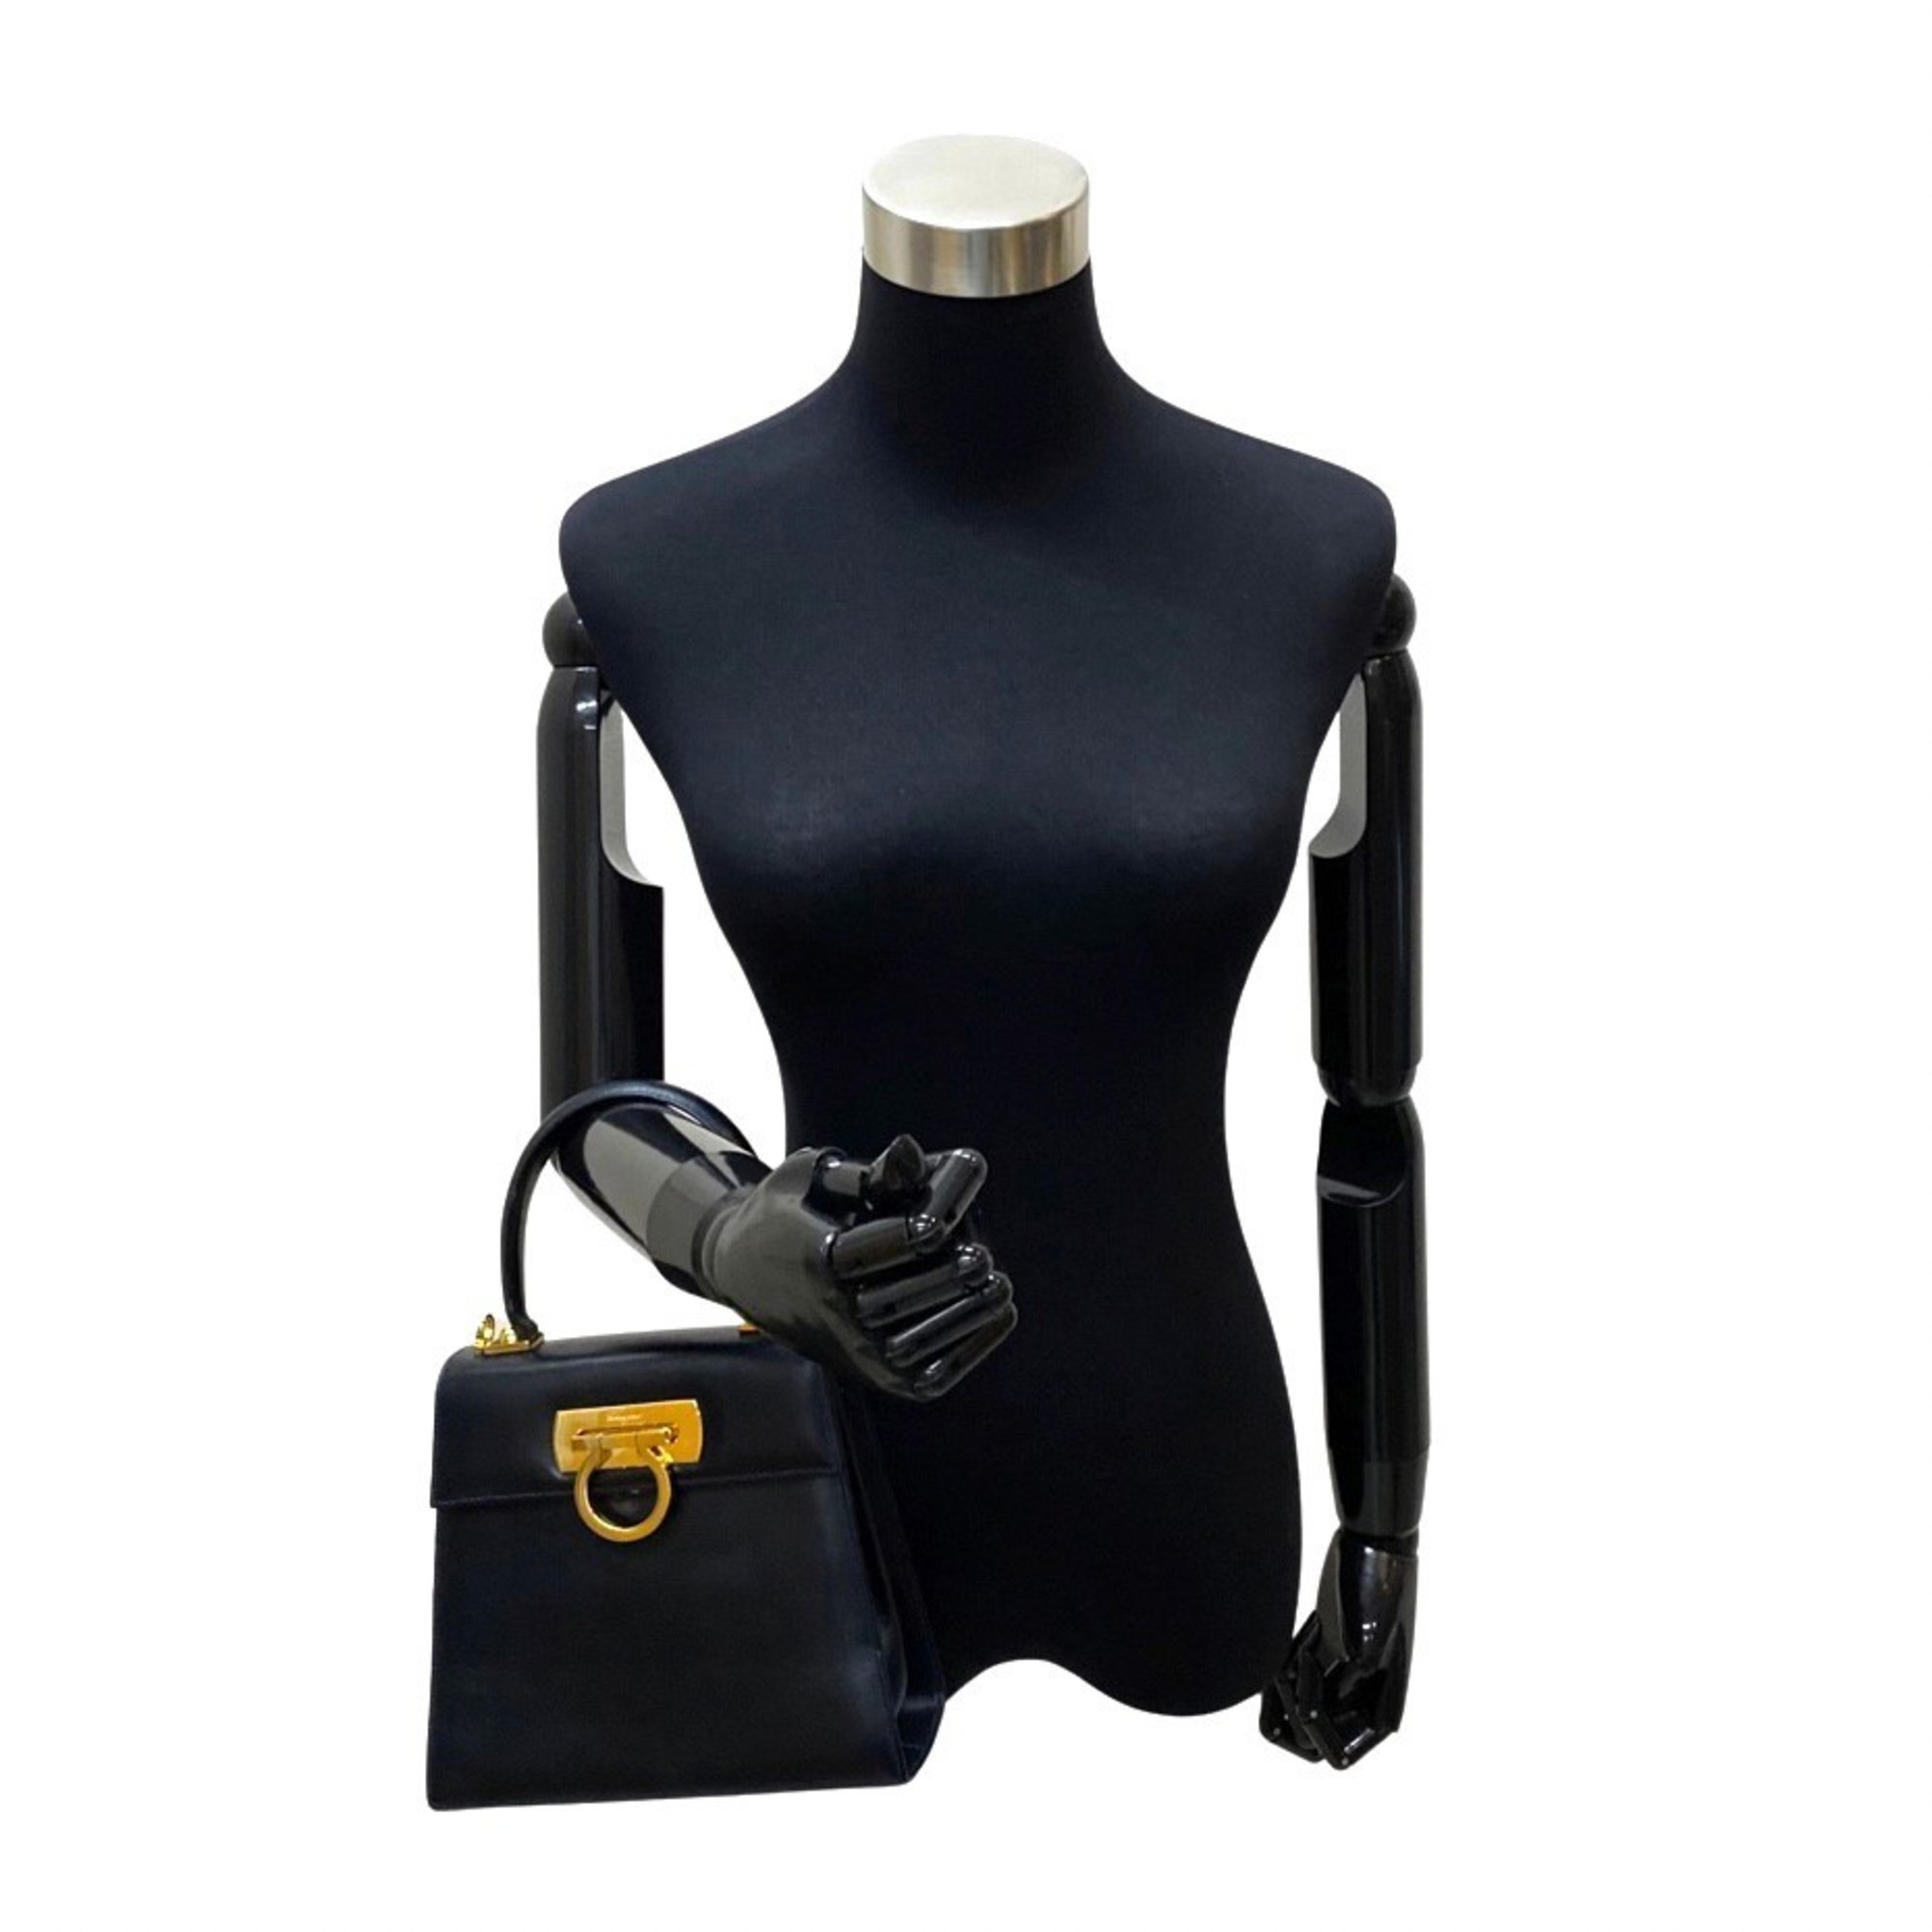 Salvatore Ferragamo Gancini Calf Leather 2way Handbag Shoulder Bag Dark Navy